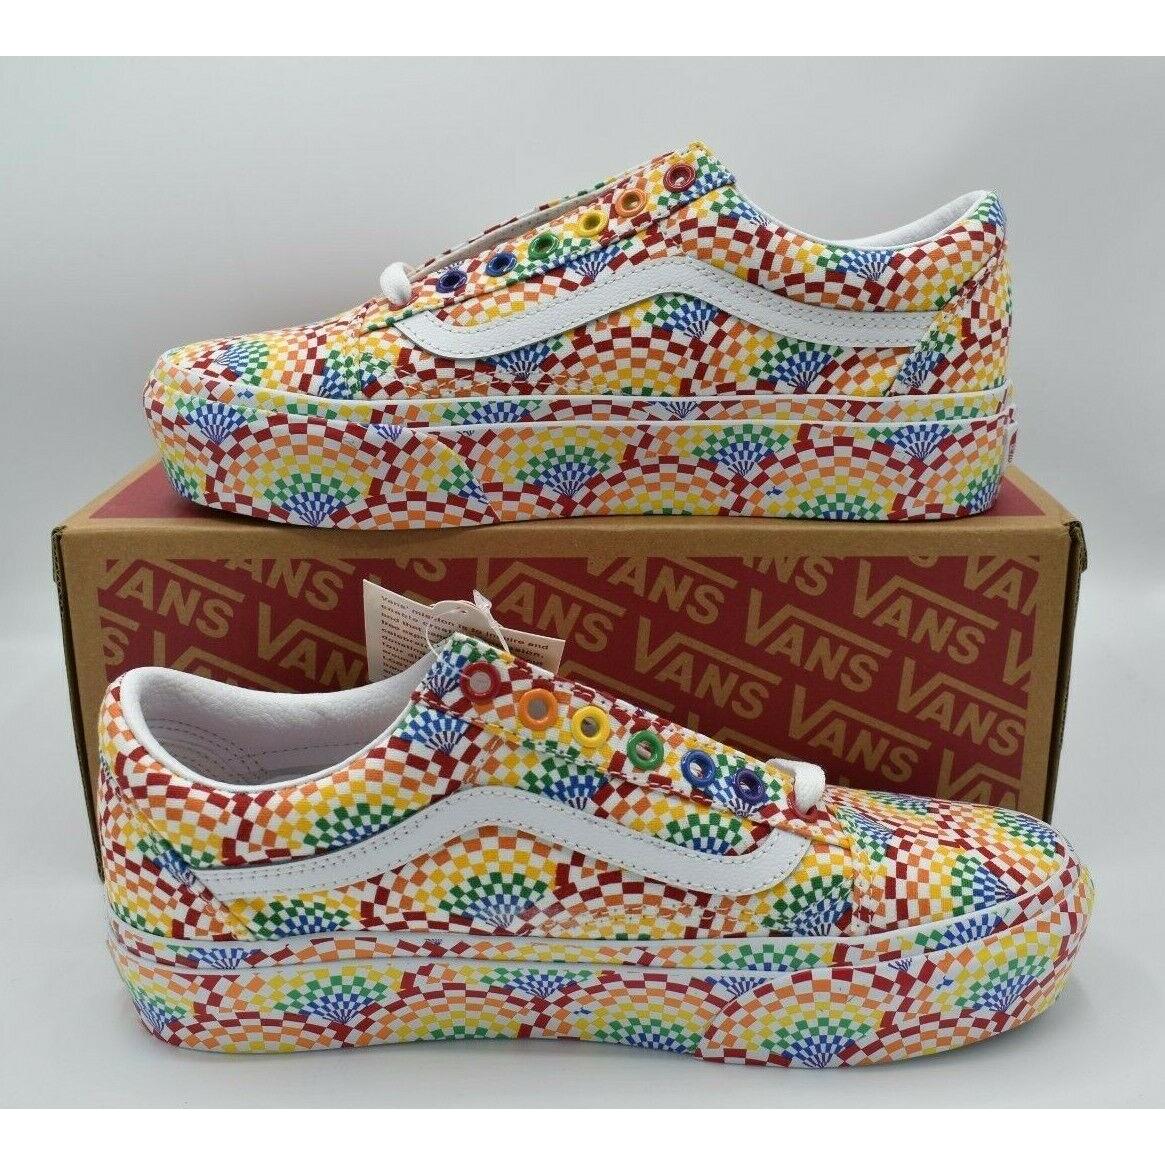 Vans Womens Size 9.5 Old Skool Multicolor Platform Pride Shoes Sneakers